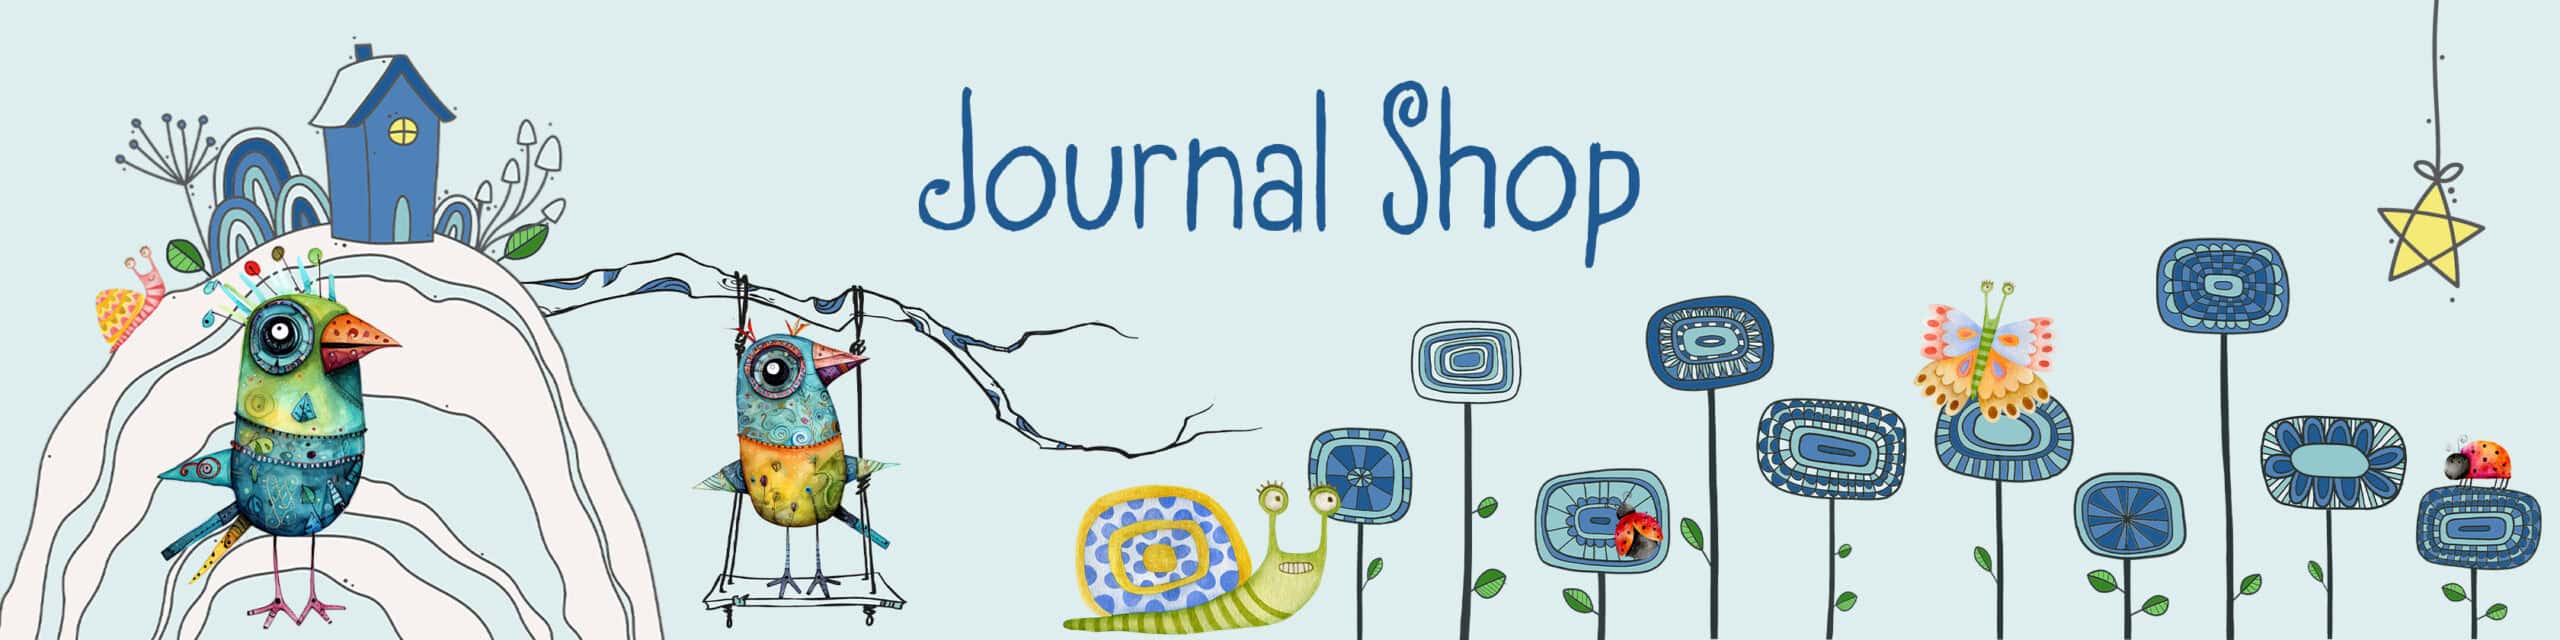 website banner journal shop